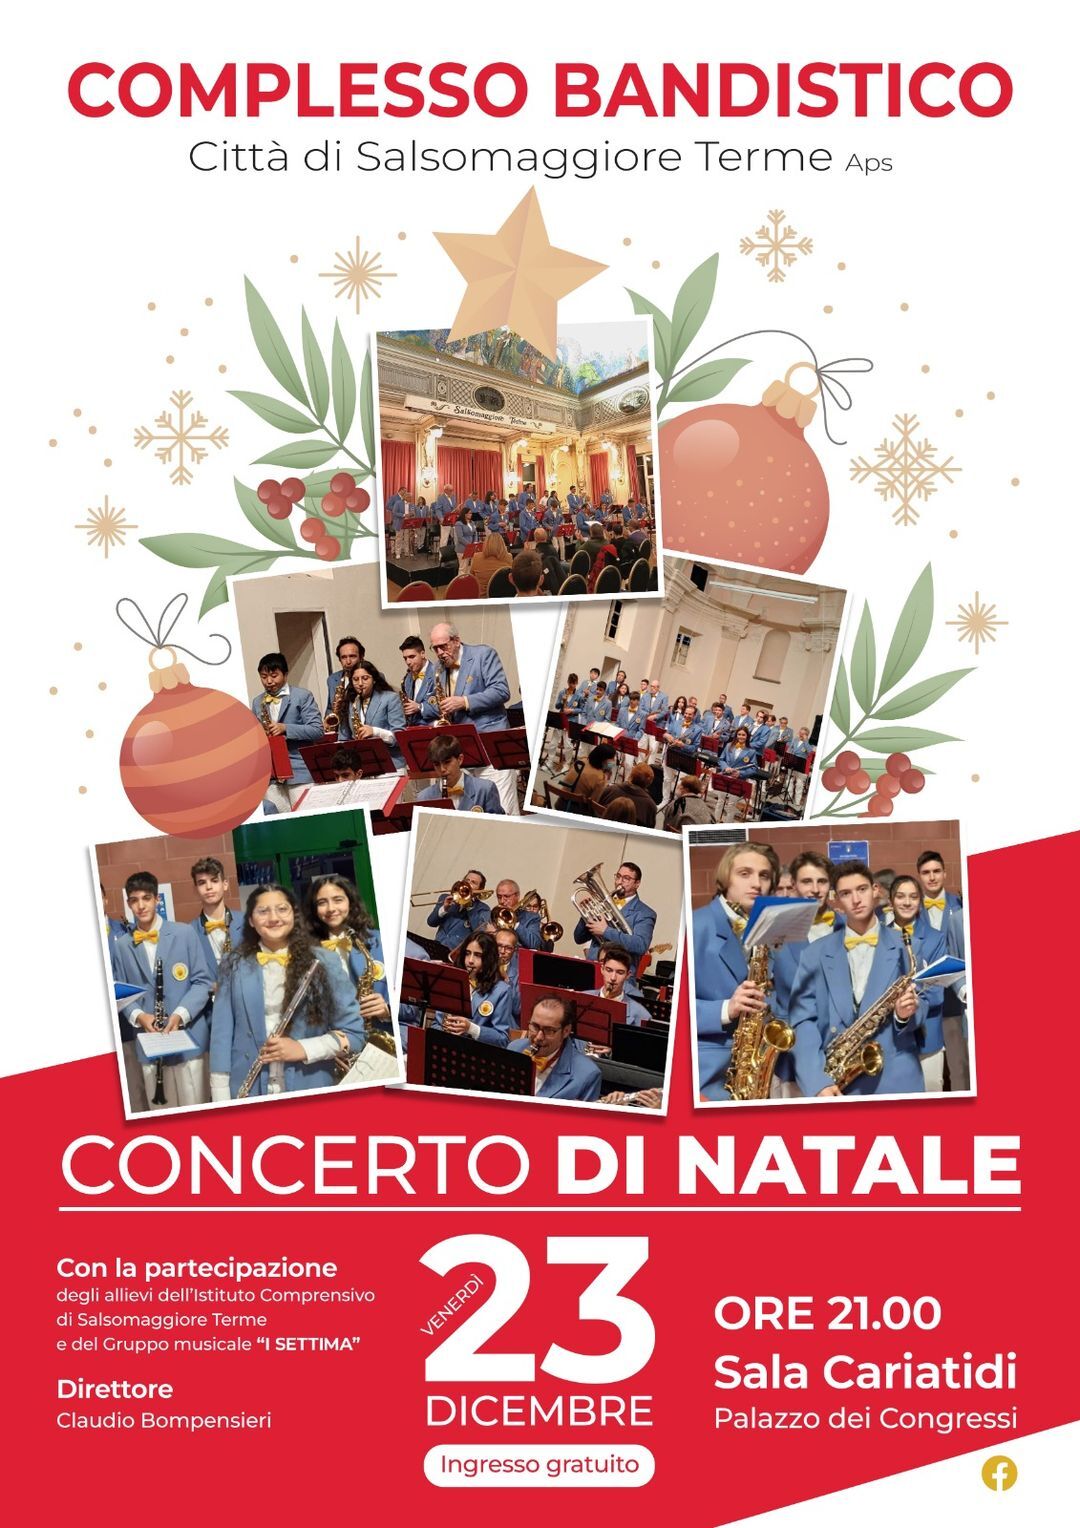 Concerto di Natale con il  Complesso Bandistico "Città di Salsomaggiore Terme"